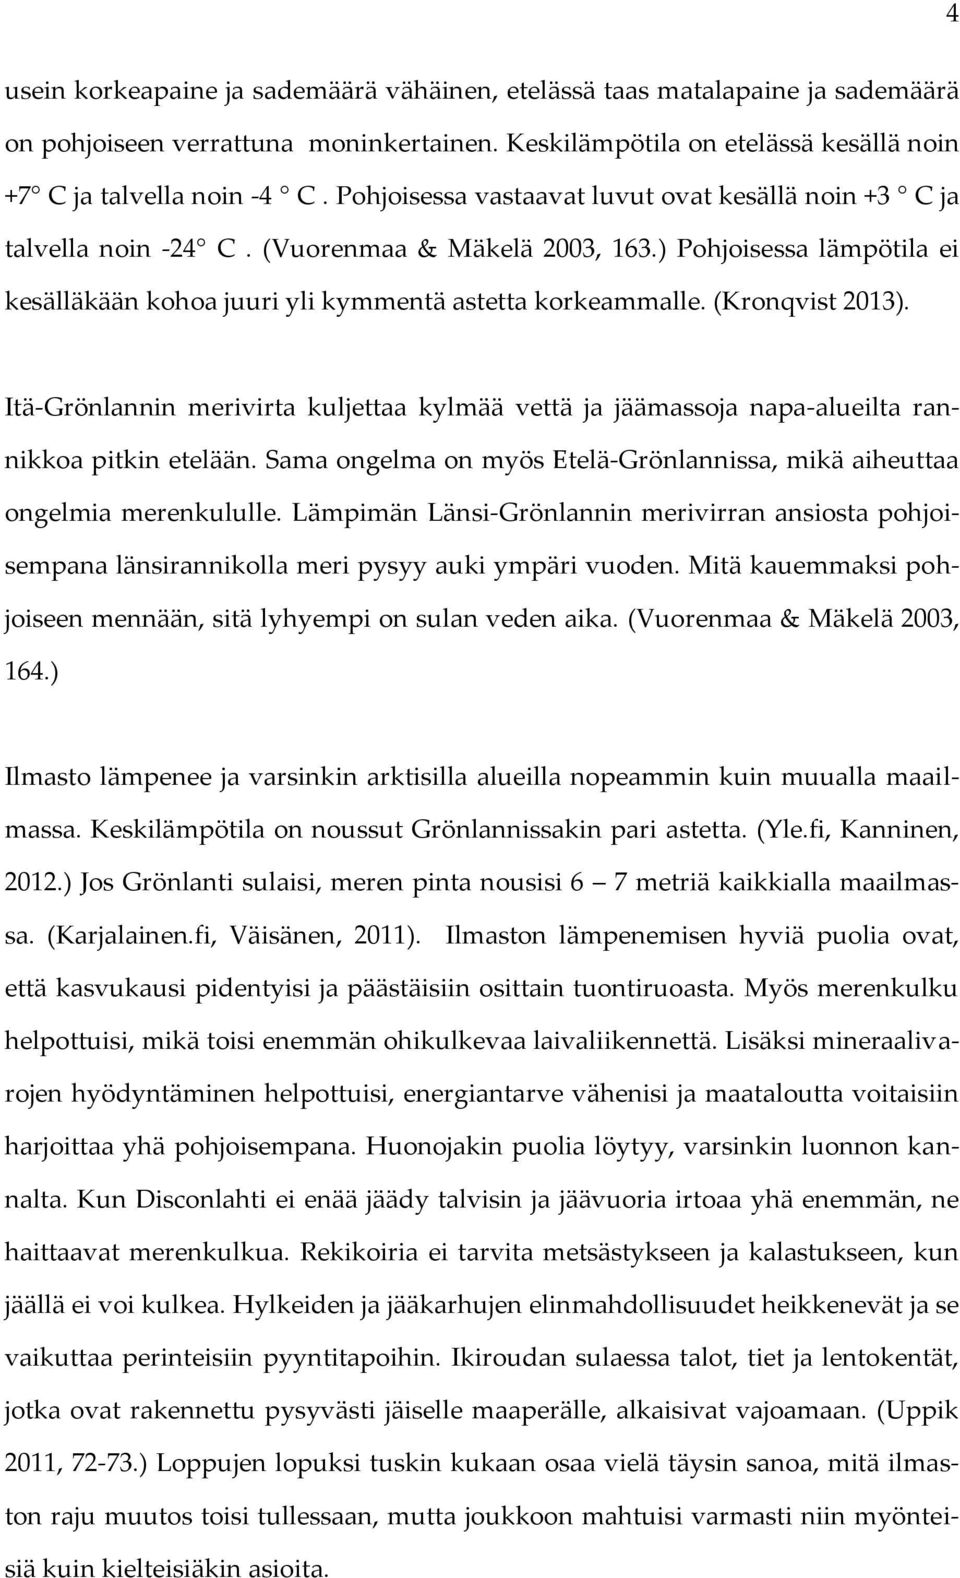 (Kronqvist 2013). Itä-Grönlannin merivirta kuljettaa kylmää vettä ja jäämassoja napa-alueilta rannikkoa pitkin etelään. Sama ongelma on myös Etelä-Grönlannissa, mikä aiheuttaa ongelmia merenkululle.